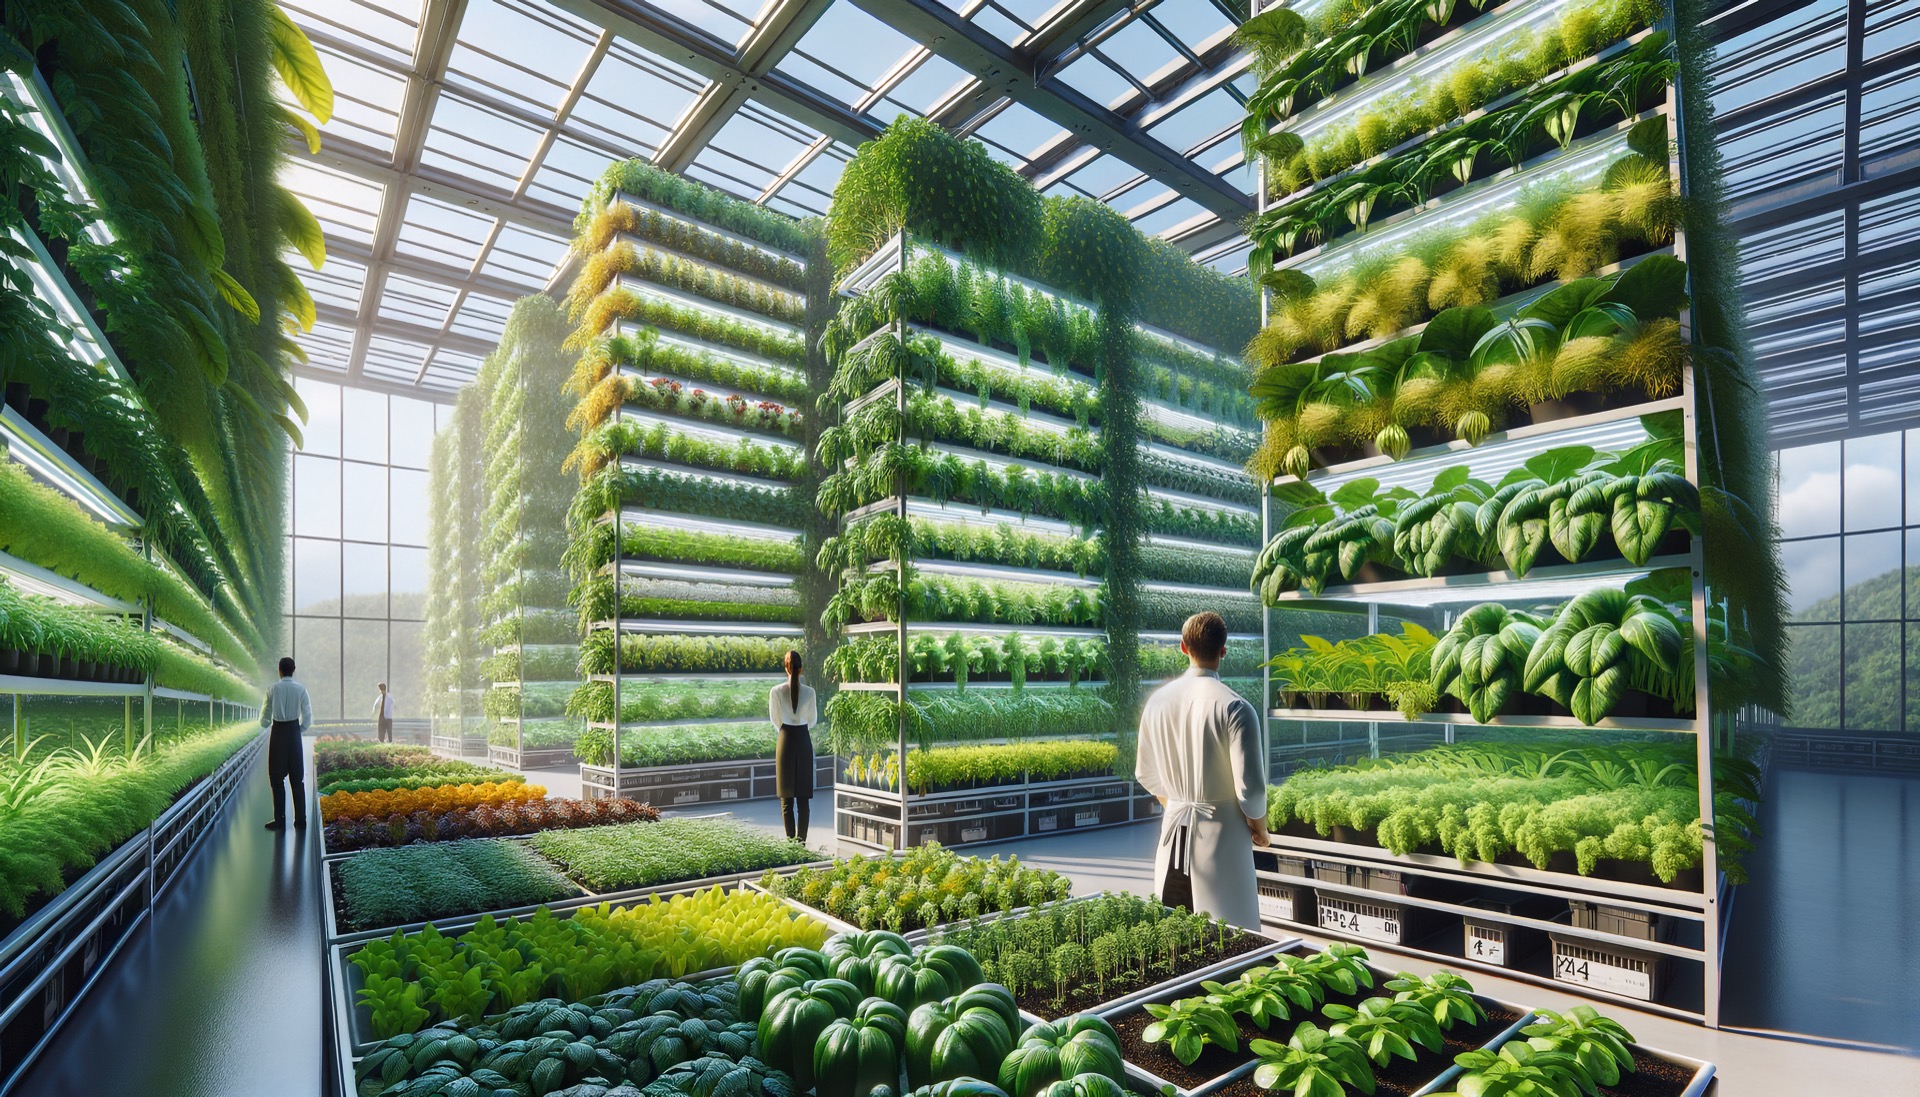 Futura Gaïa propose en effet des solutions de sécurisation de sourcing de végétaux pour les secteurs alimentaire, cosmétique, pharmaceutique et nutraceutique. Image d'illustration générée par IA. © TechArtTrends, Adobe Stock